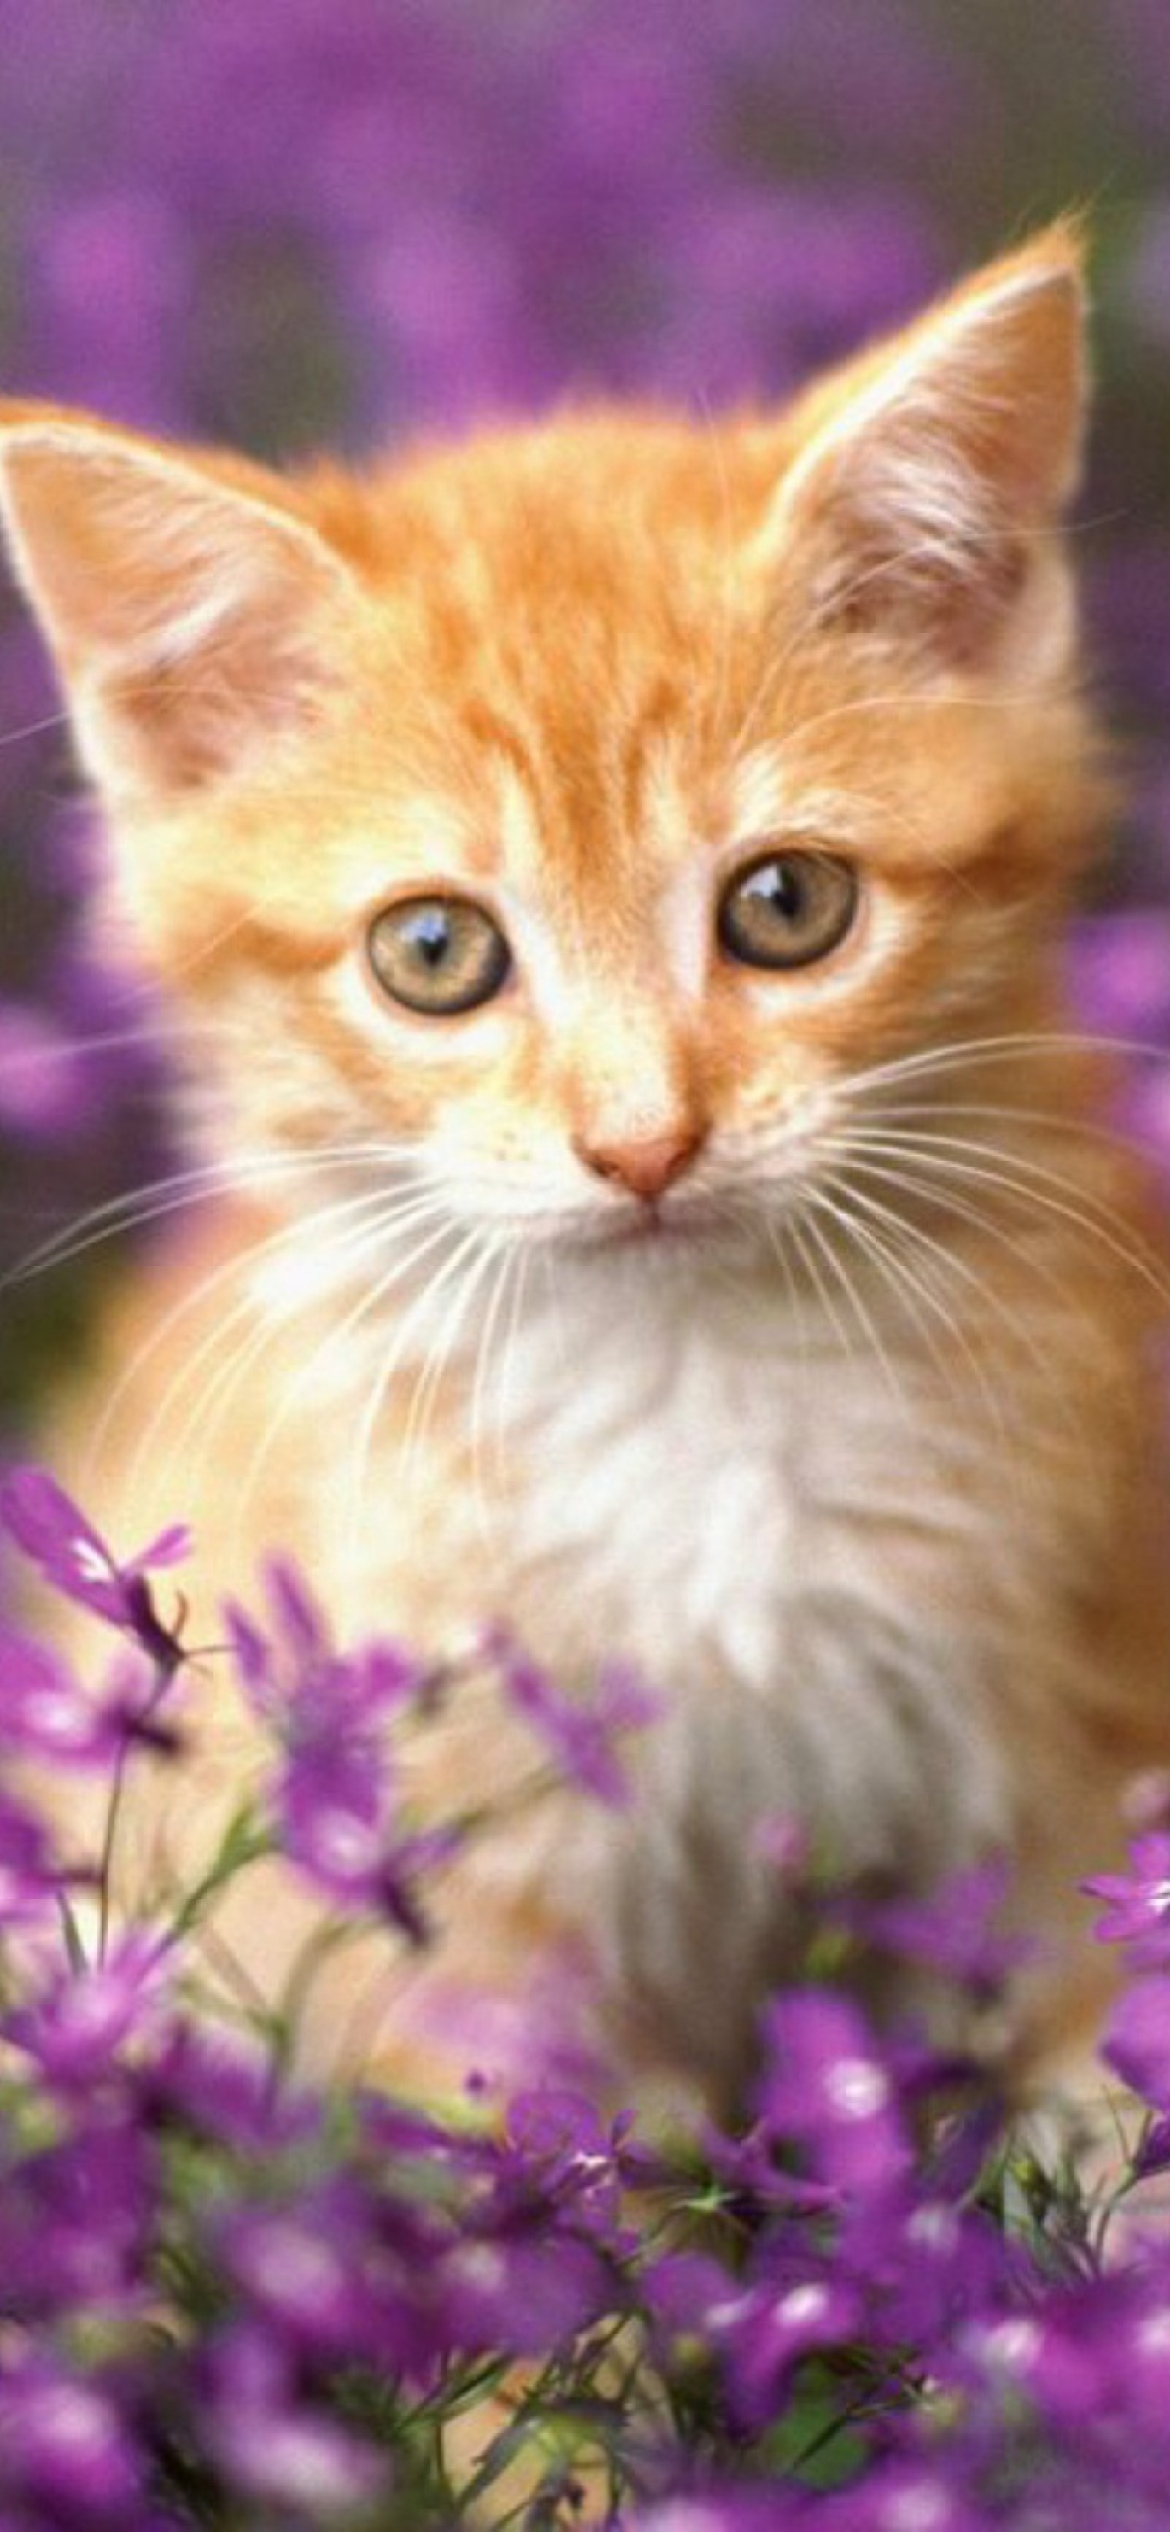 Sweet Kitten In Flower Field wallpaper 1170x2532